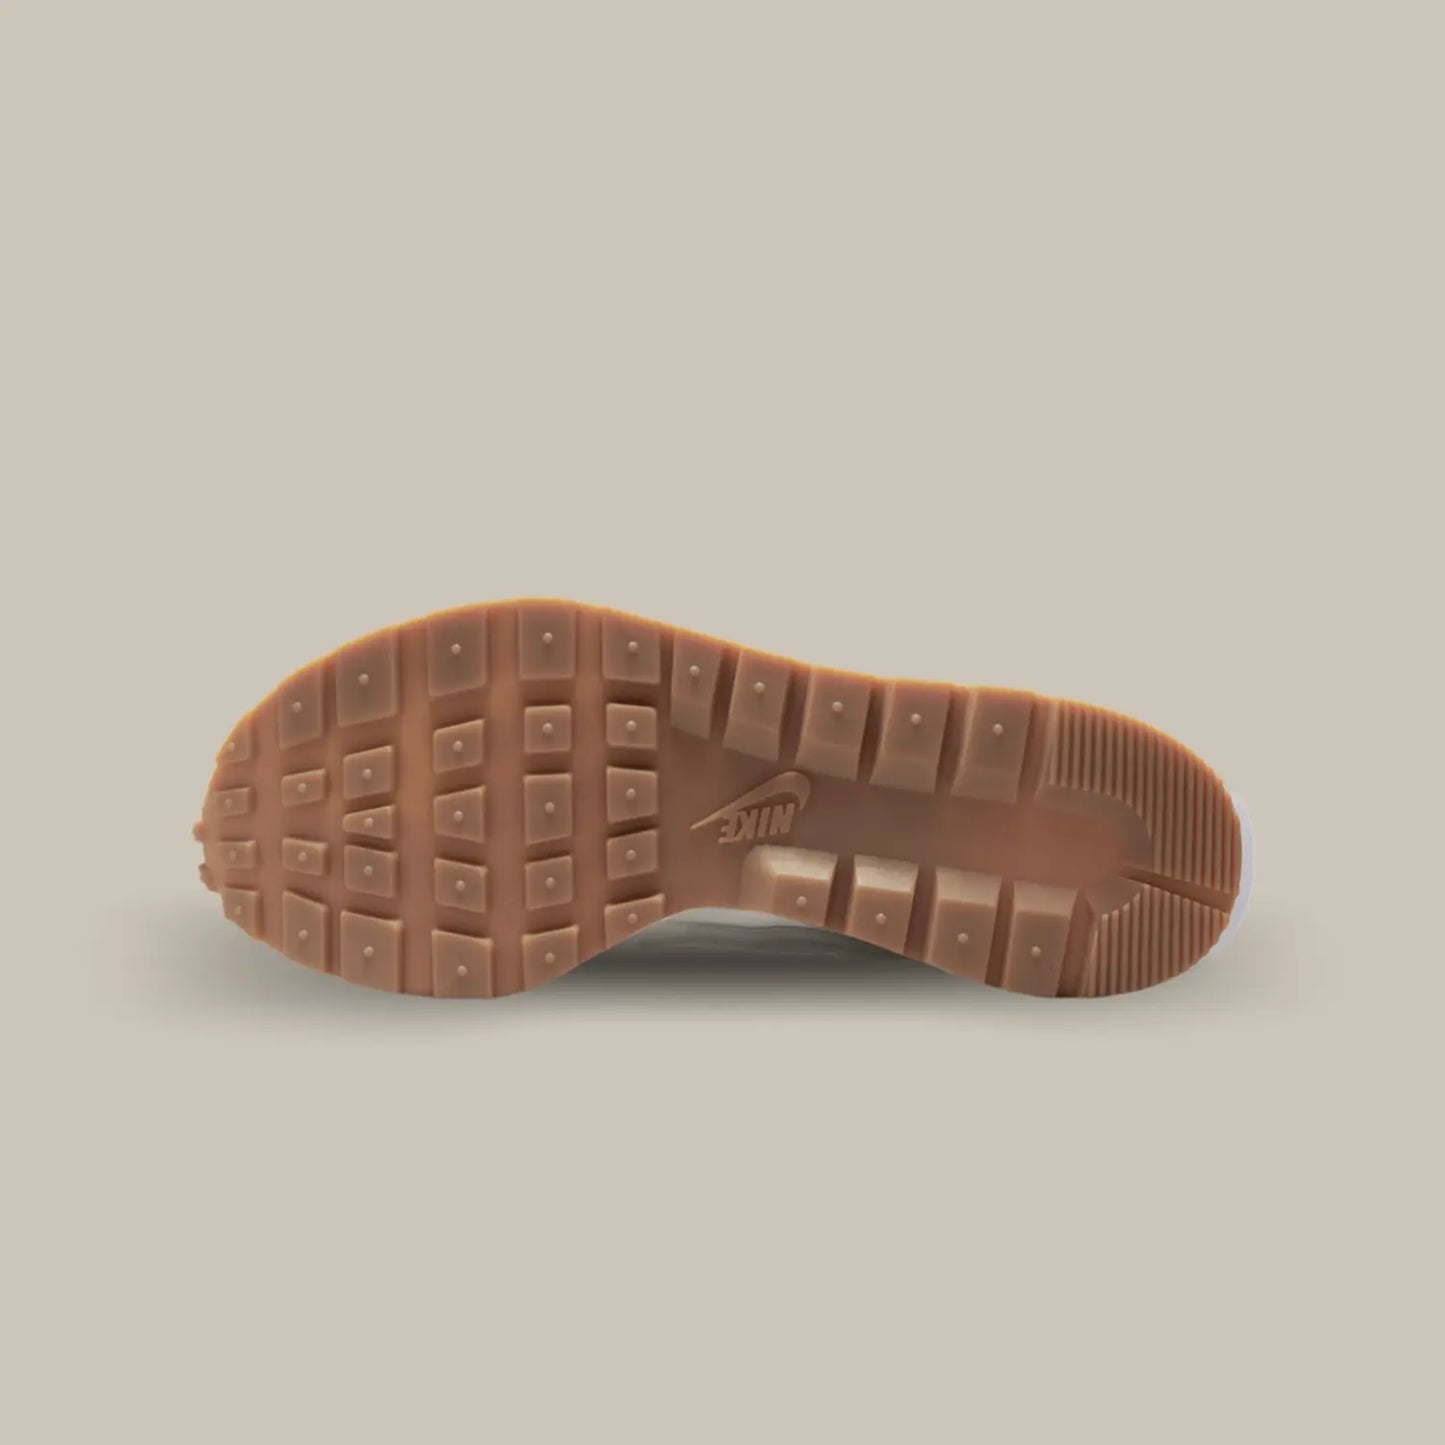 La semelle de la Nike Vaporwaffle Sacai Sail Gum de couleur marron.